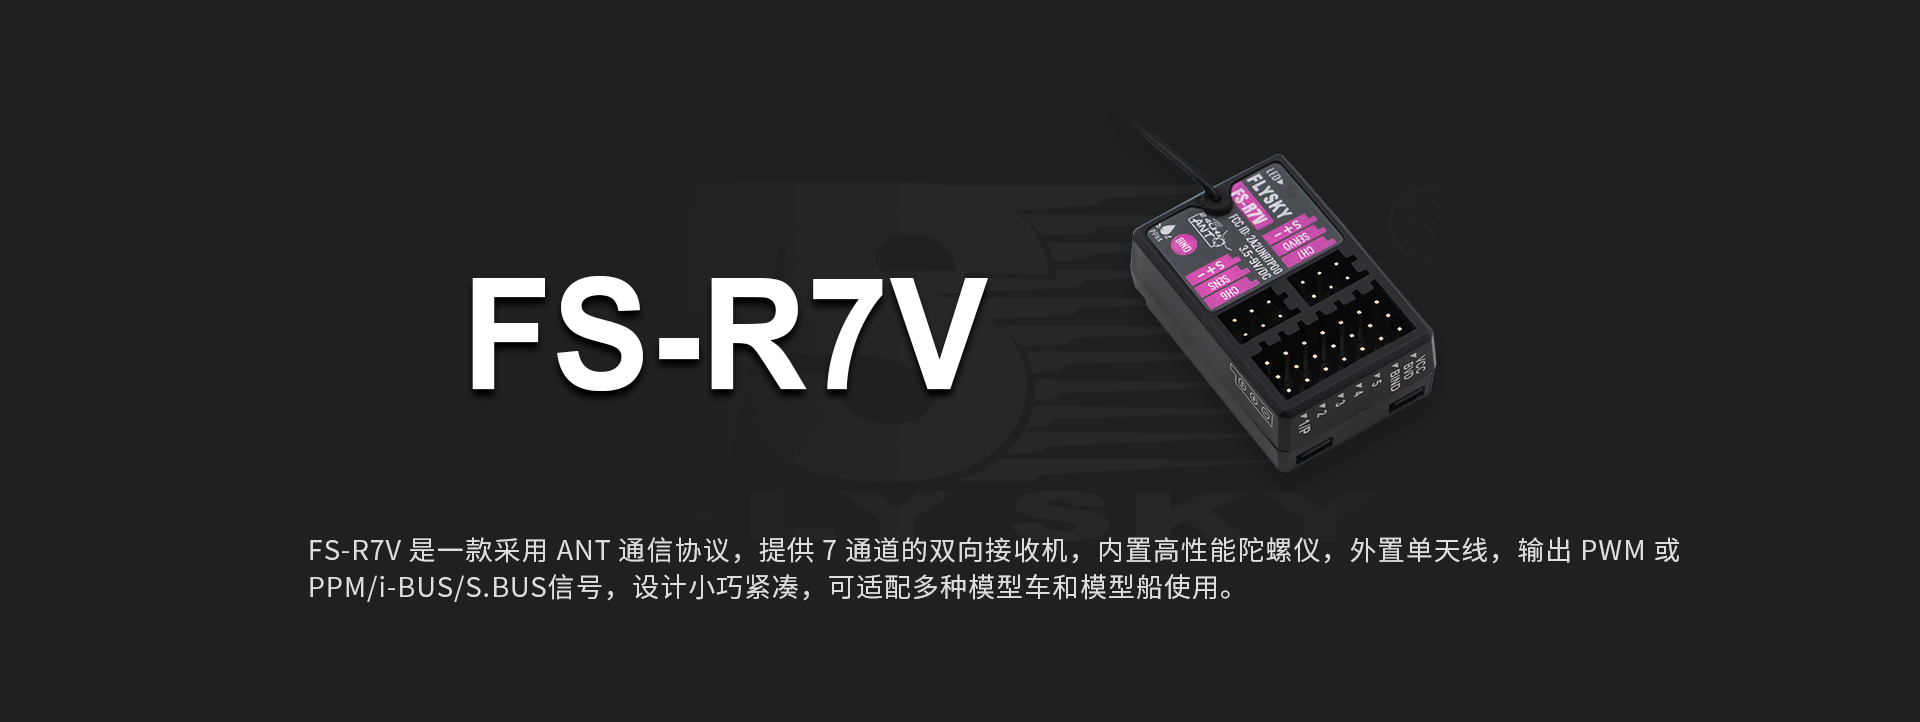 FS-R7V